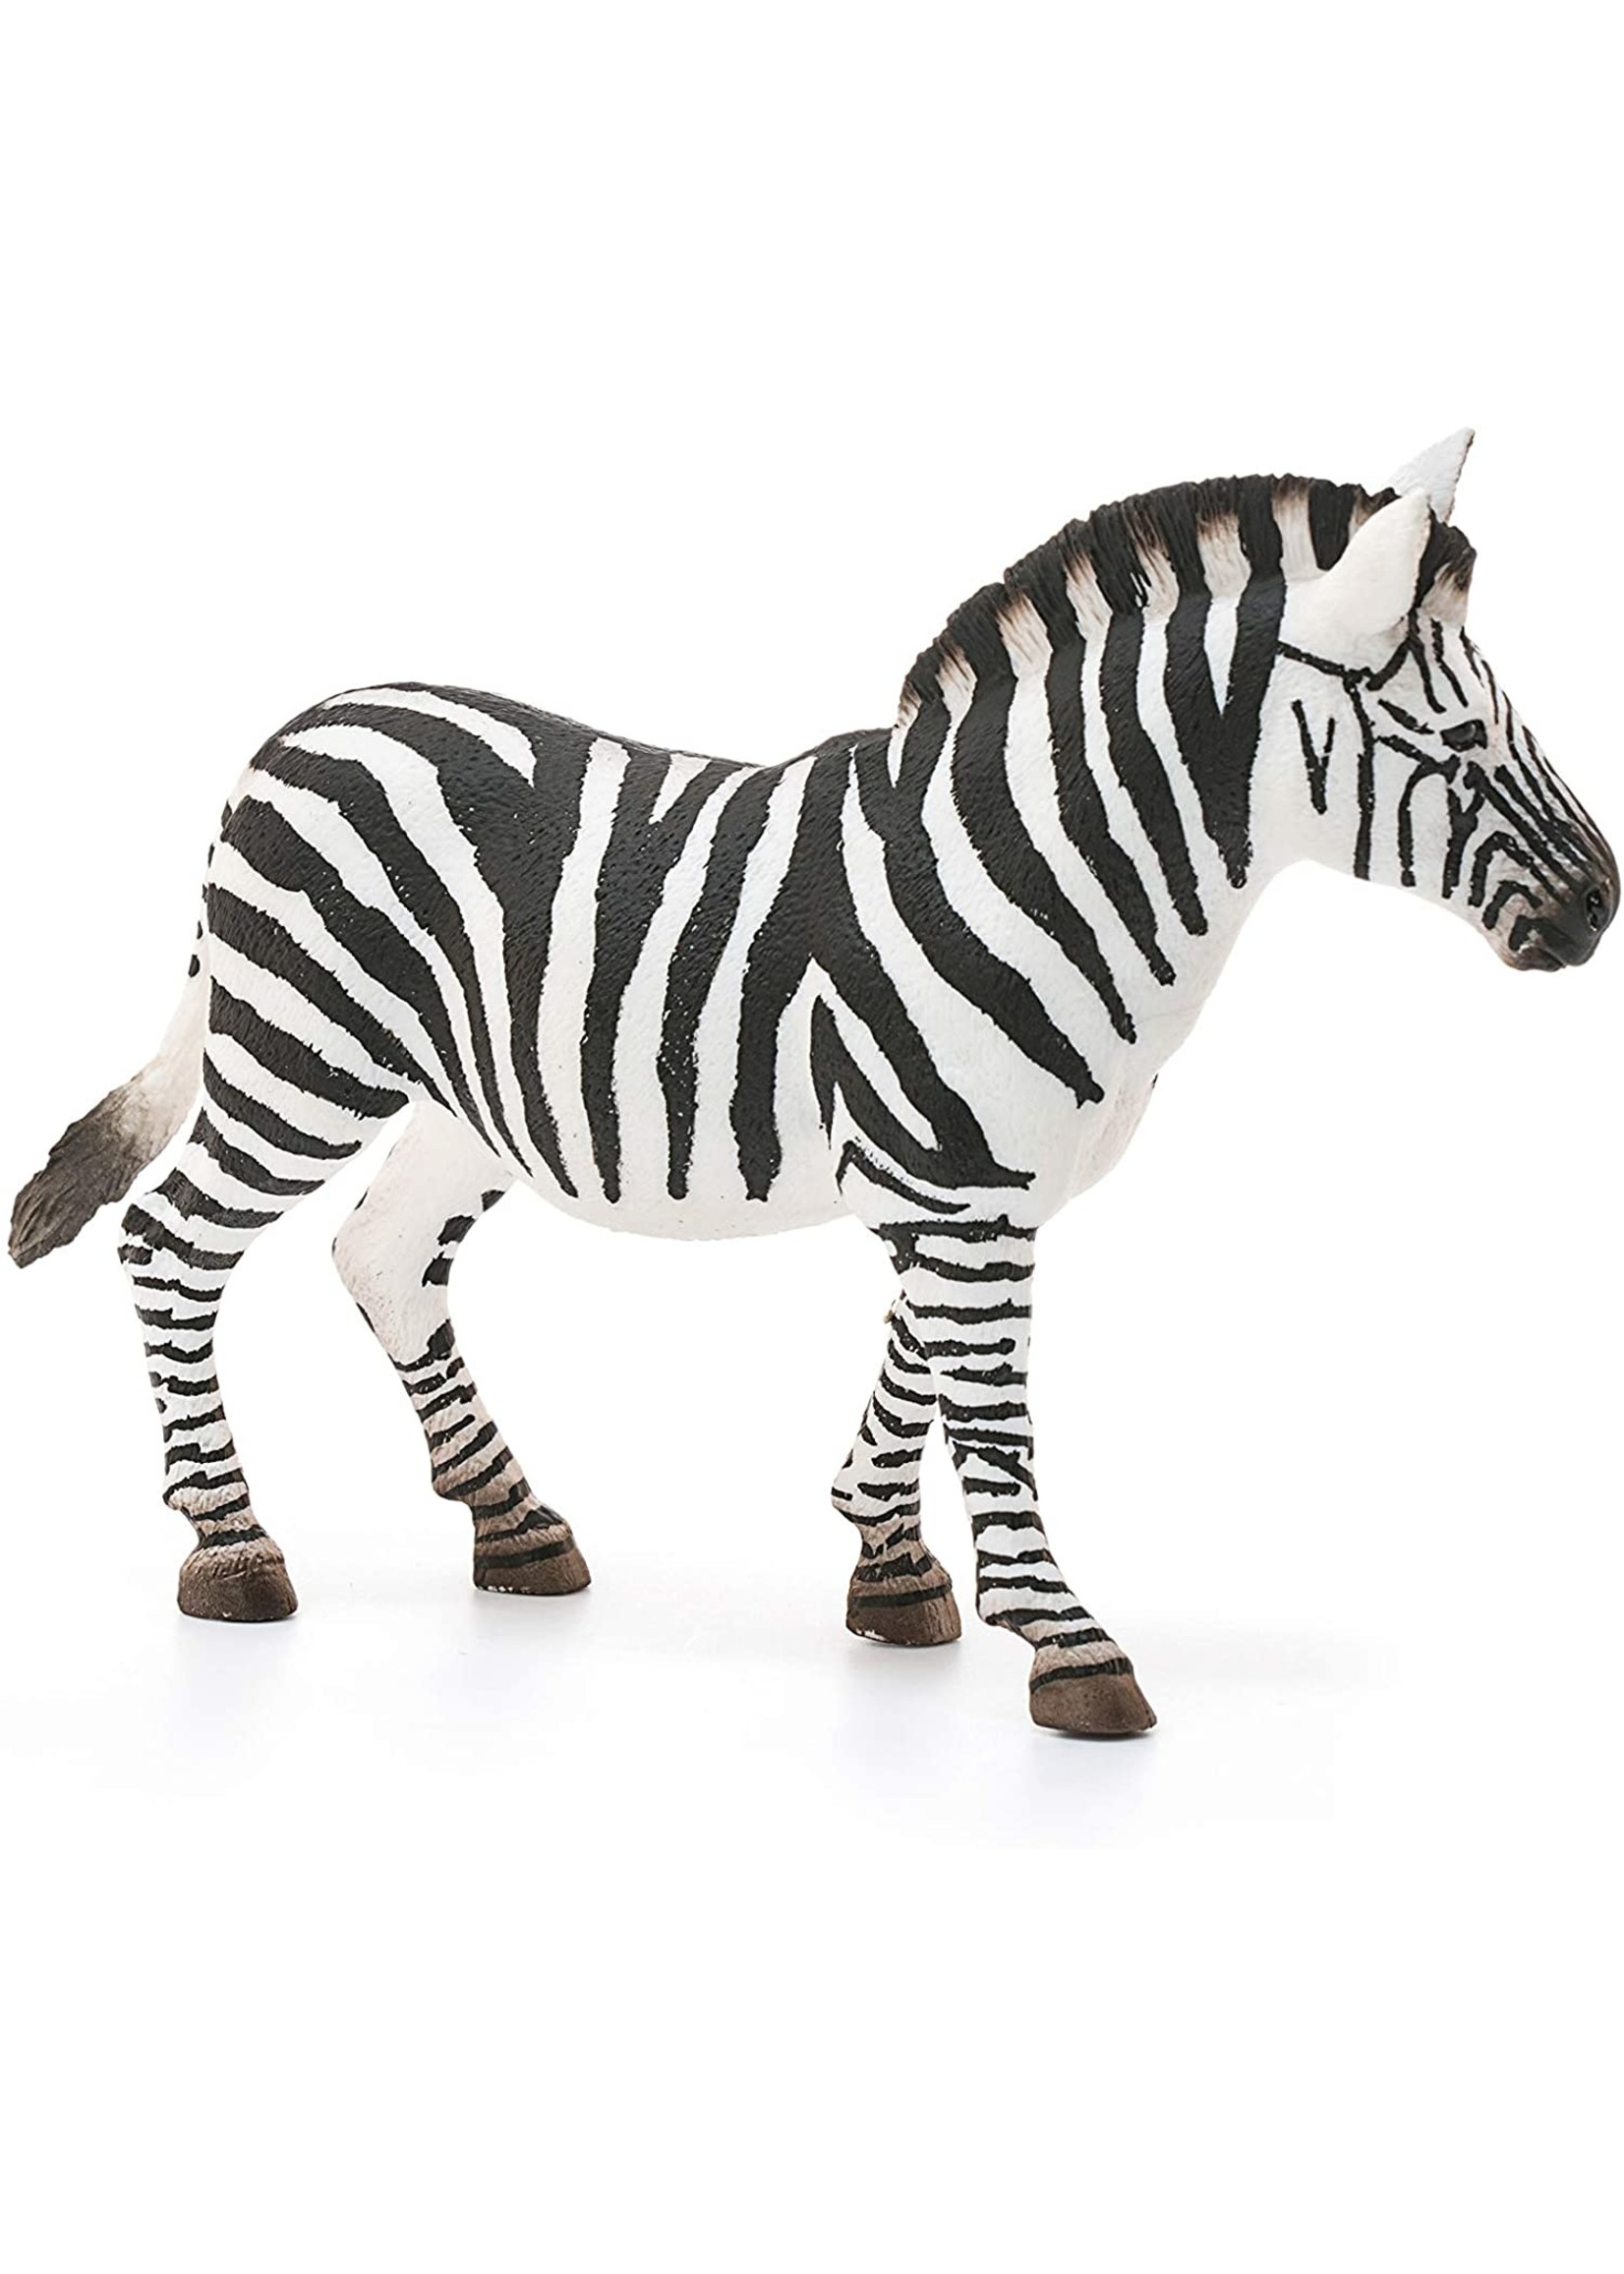 Schleich 14810 - Zebra, Female